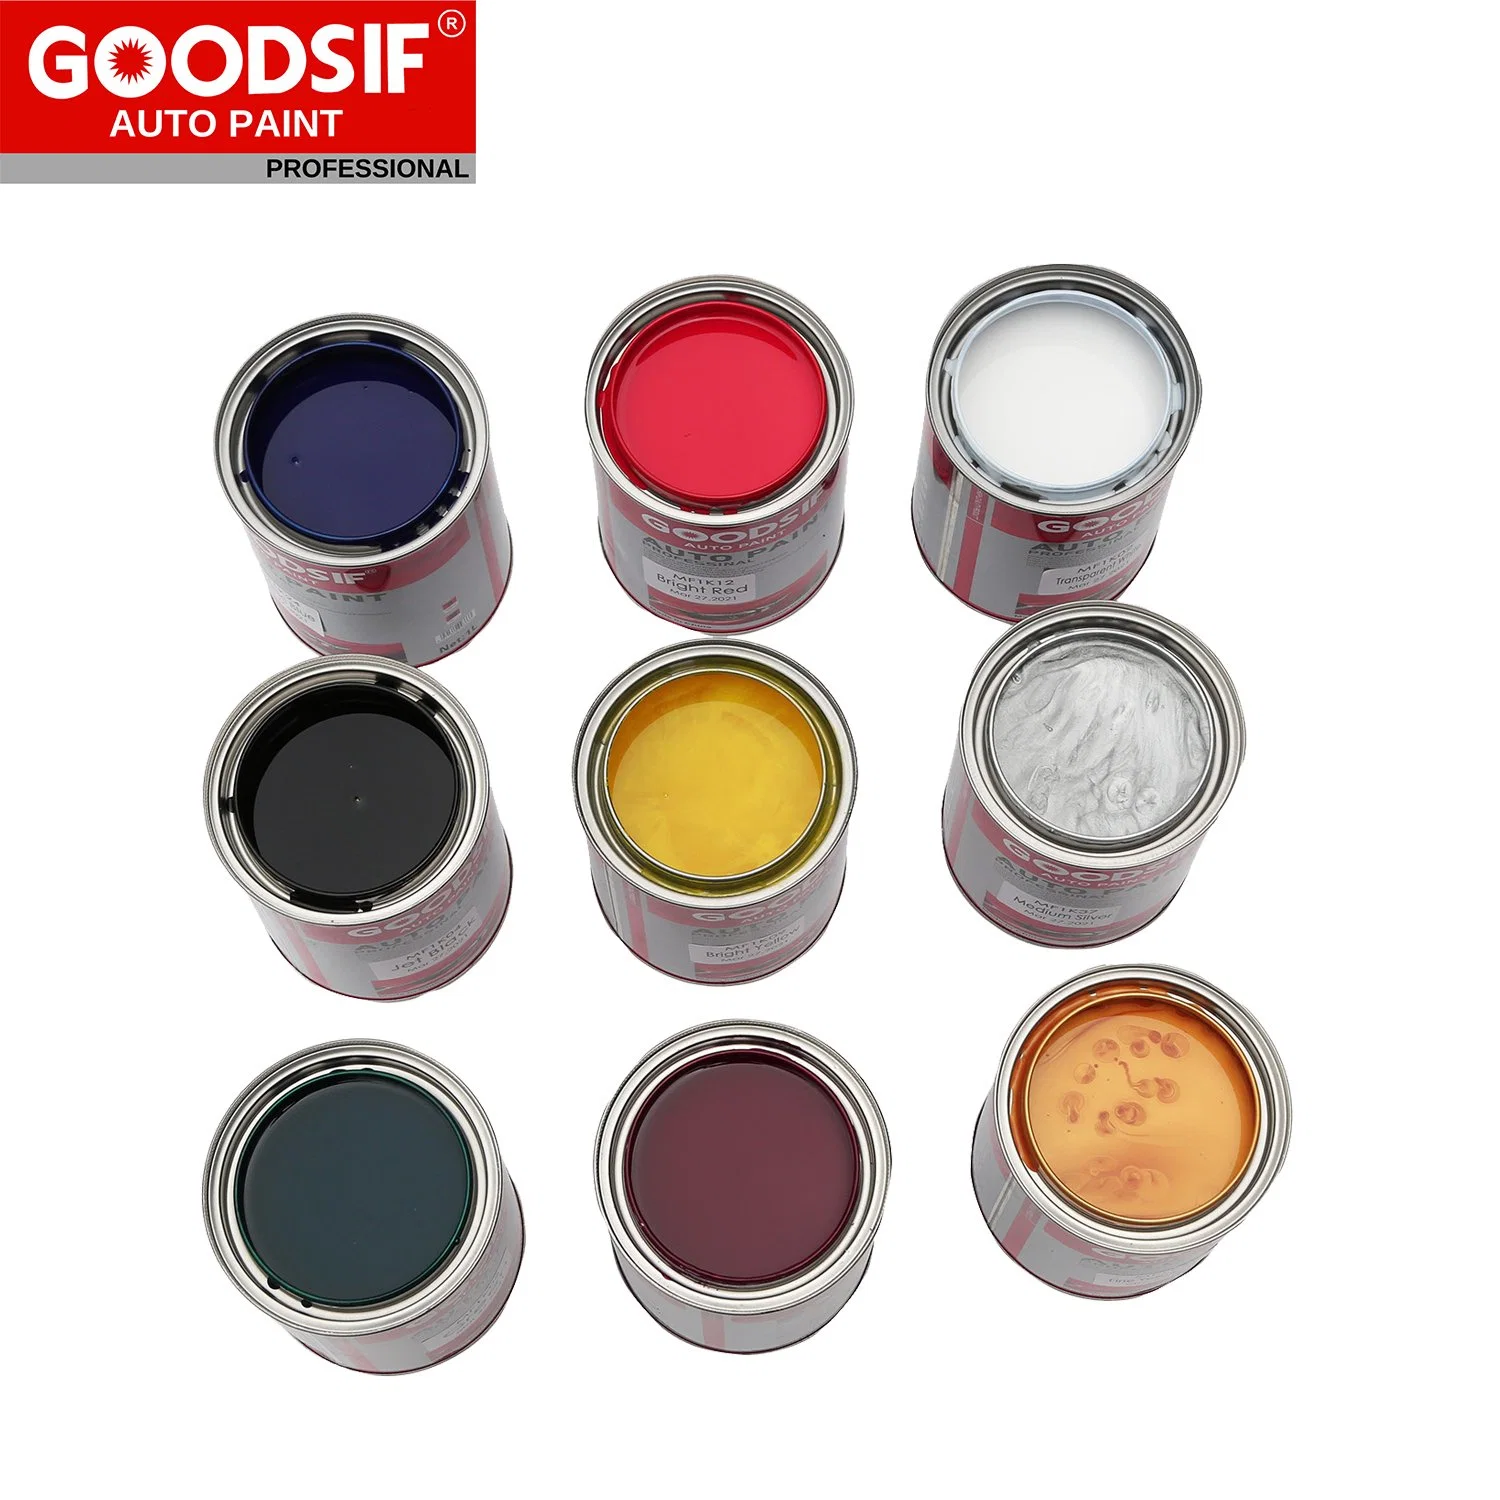 Venta caliente Productos de Pintura para automóviles Goodsif 1K 2K mezcla de toner Base fábrica Precio Auto Body Shop Refine Automotive Paint